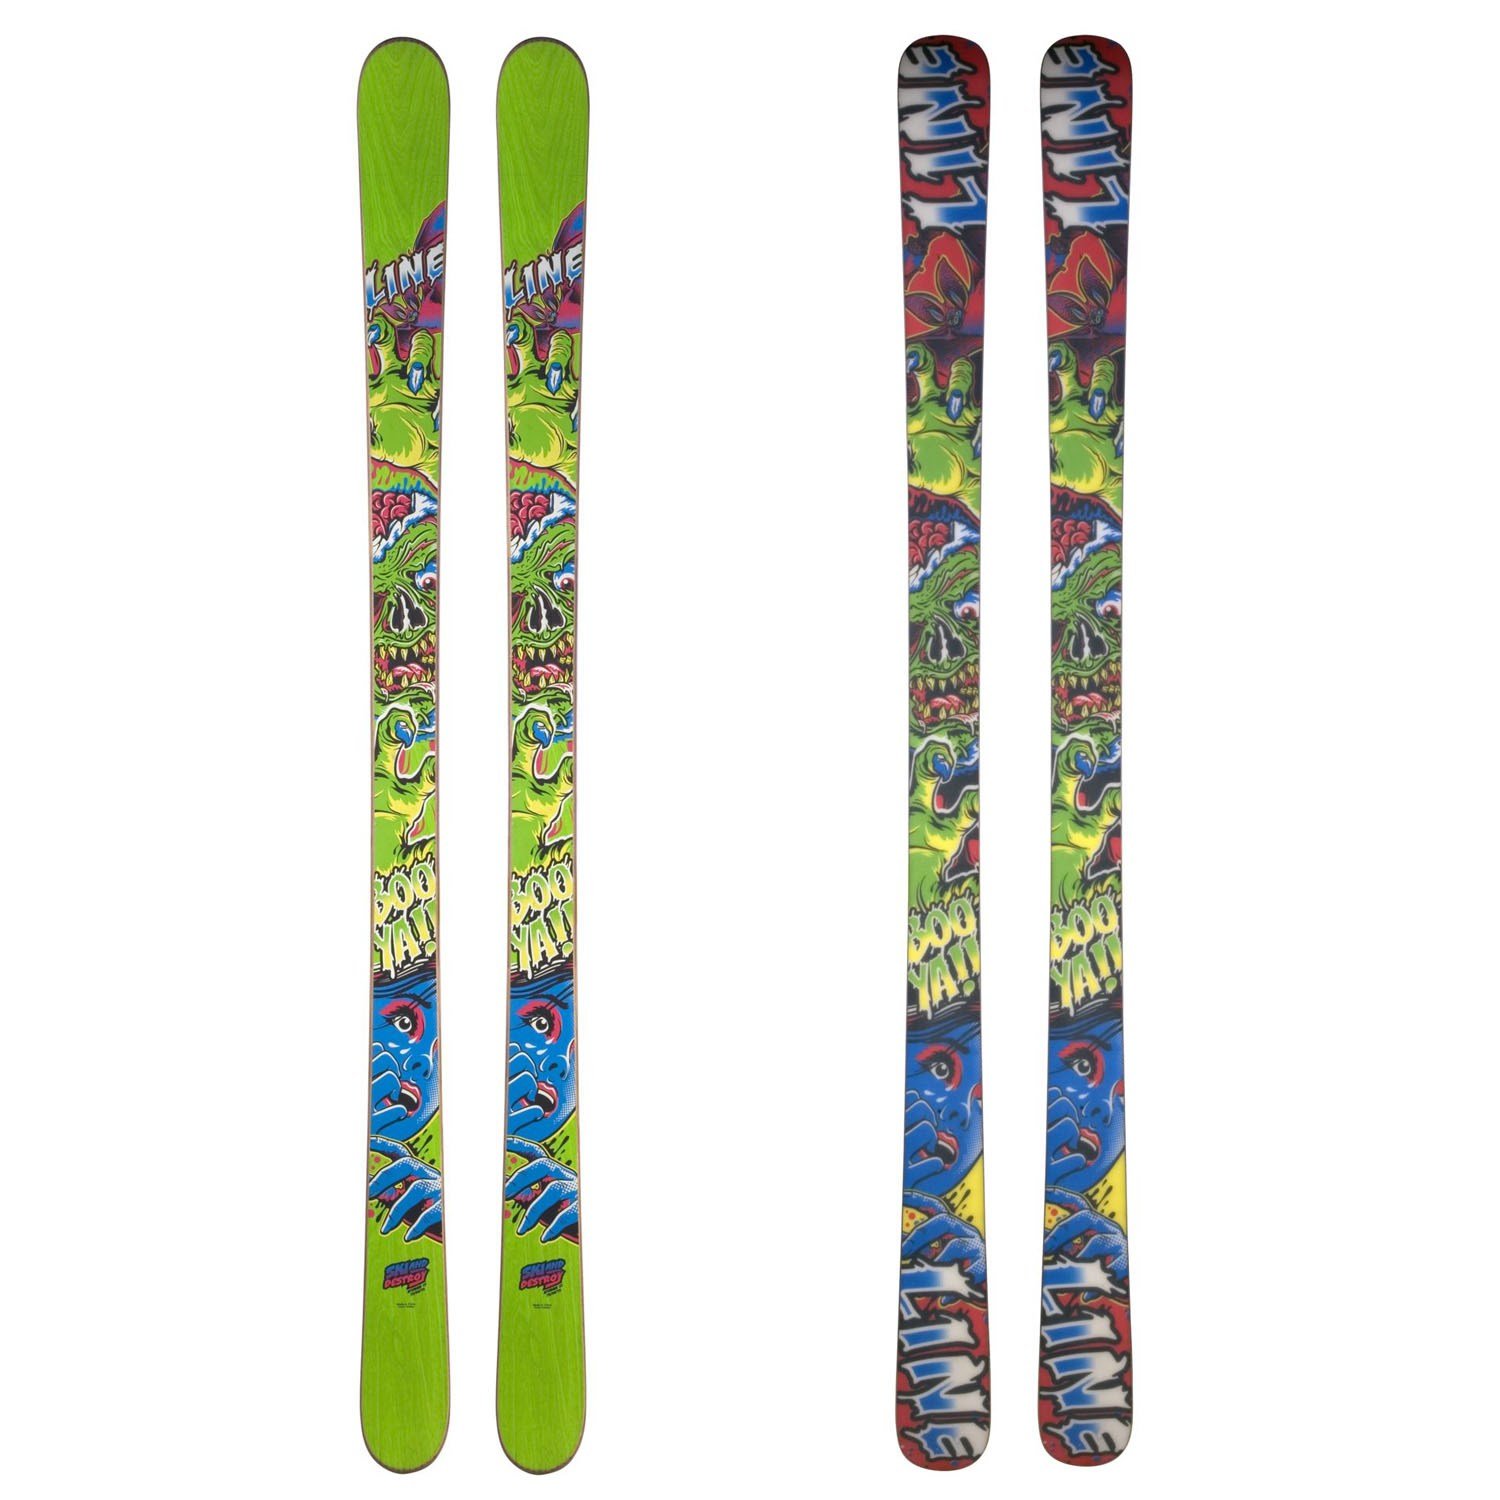 Line Skis Afterbang Skis 2012 | evo